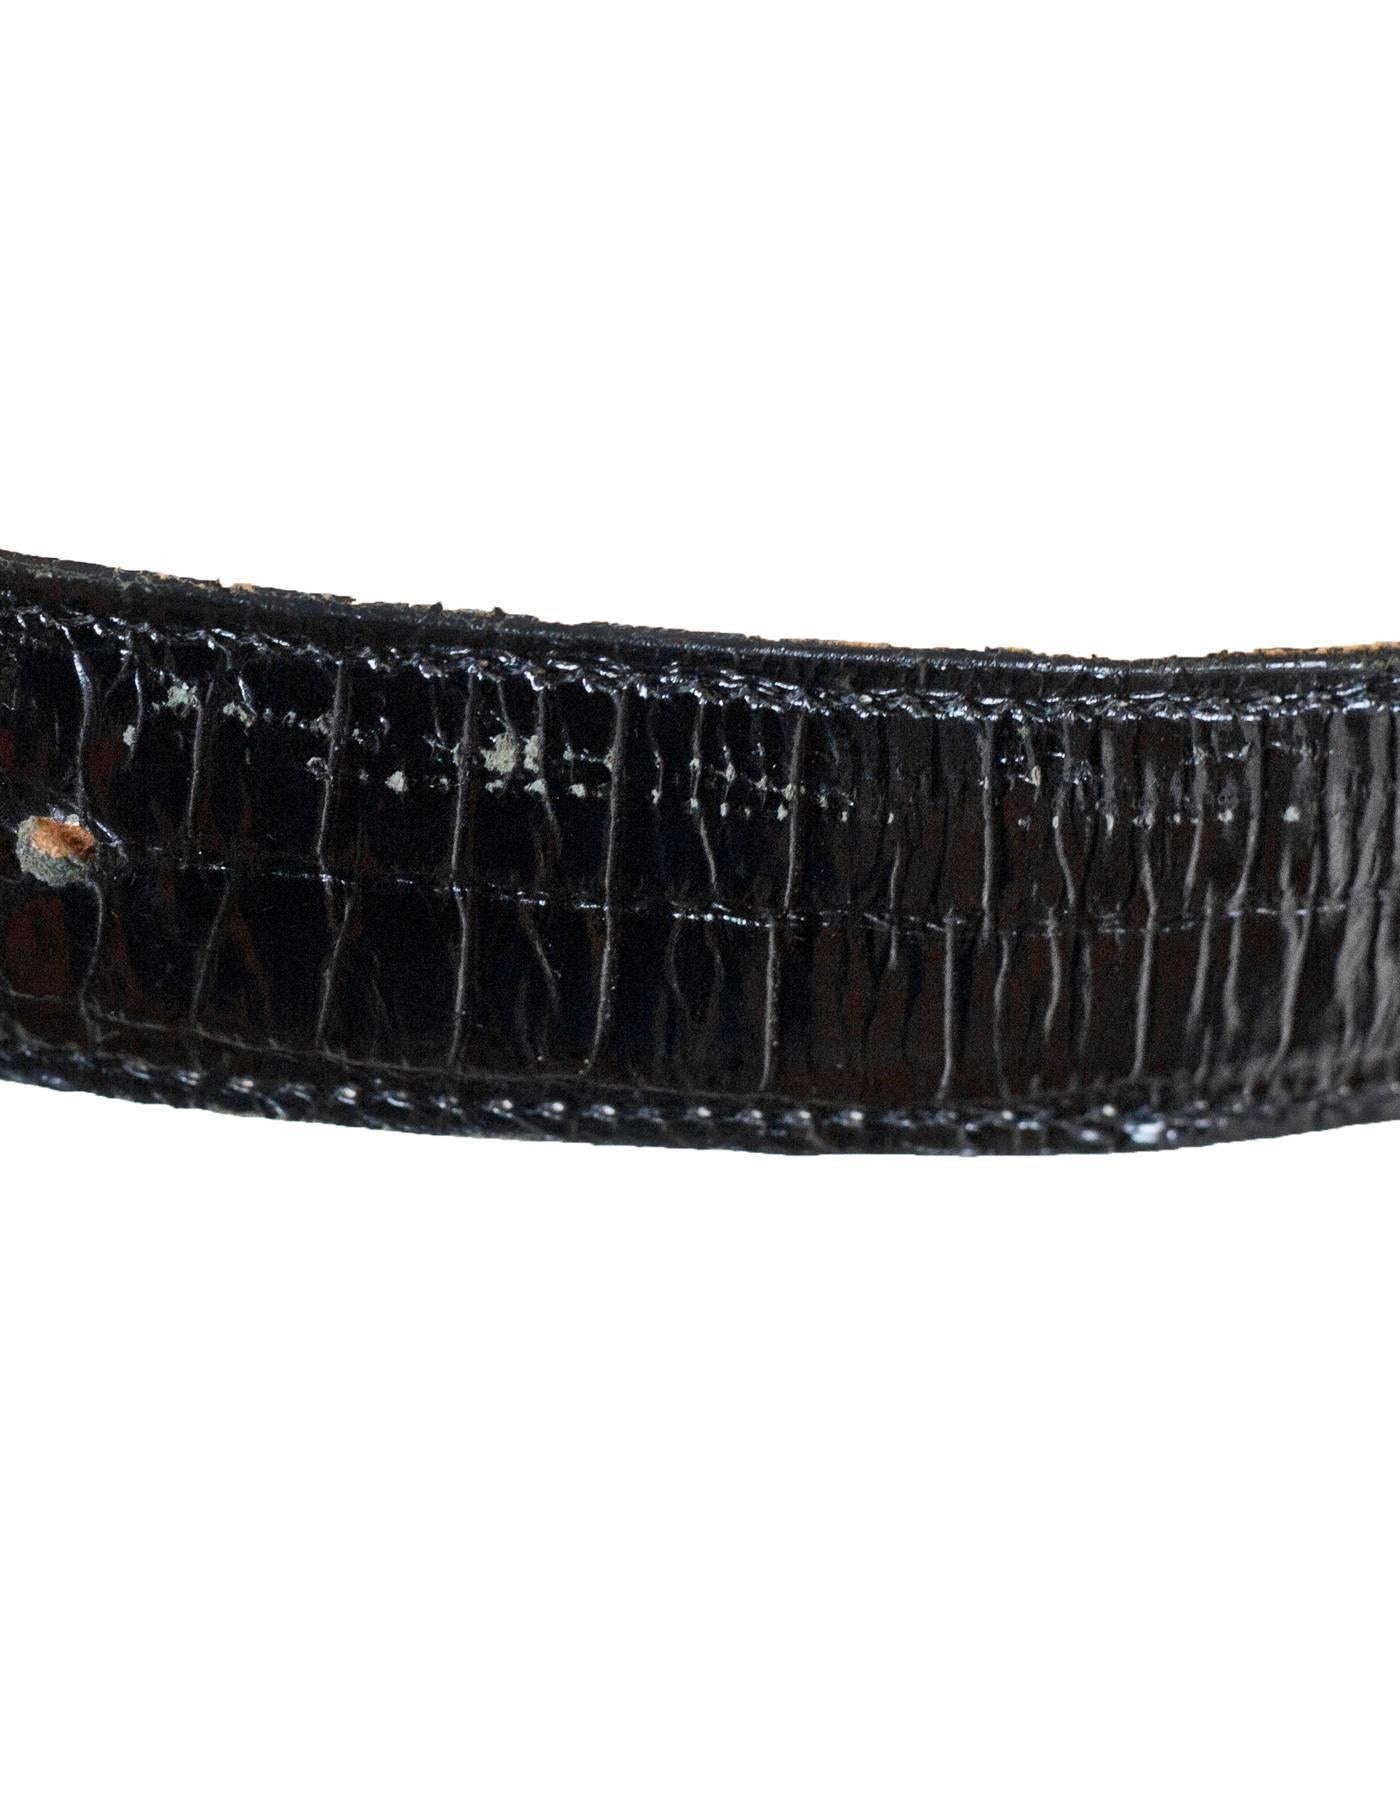  Kieselstein-Cord Sterling Silver Frog Buckle & Black Embossed Leather Belt 2